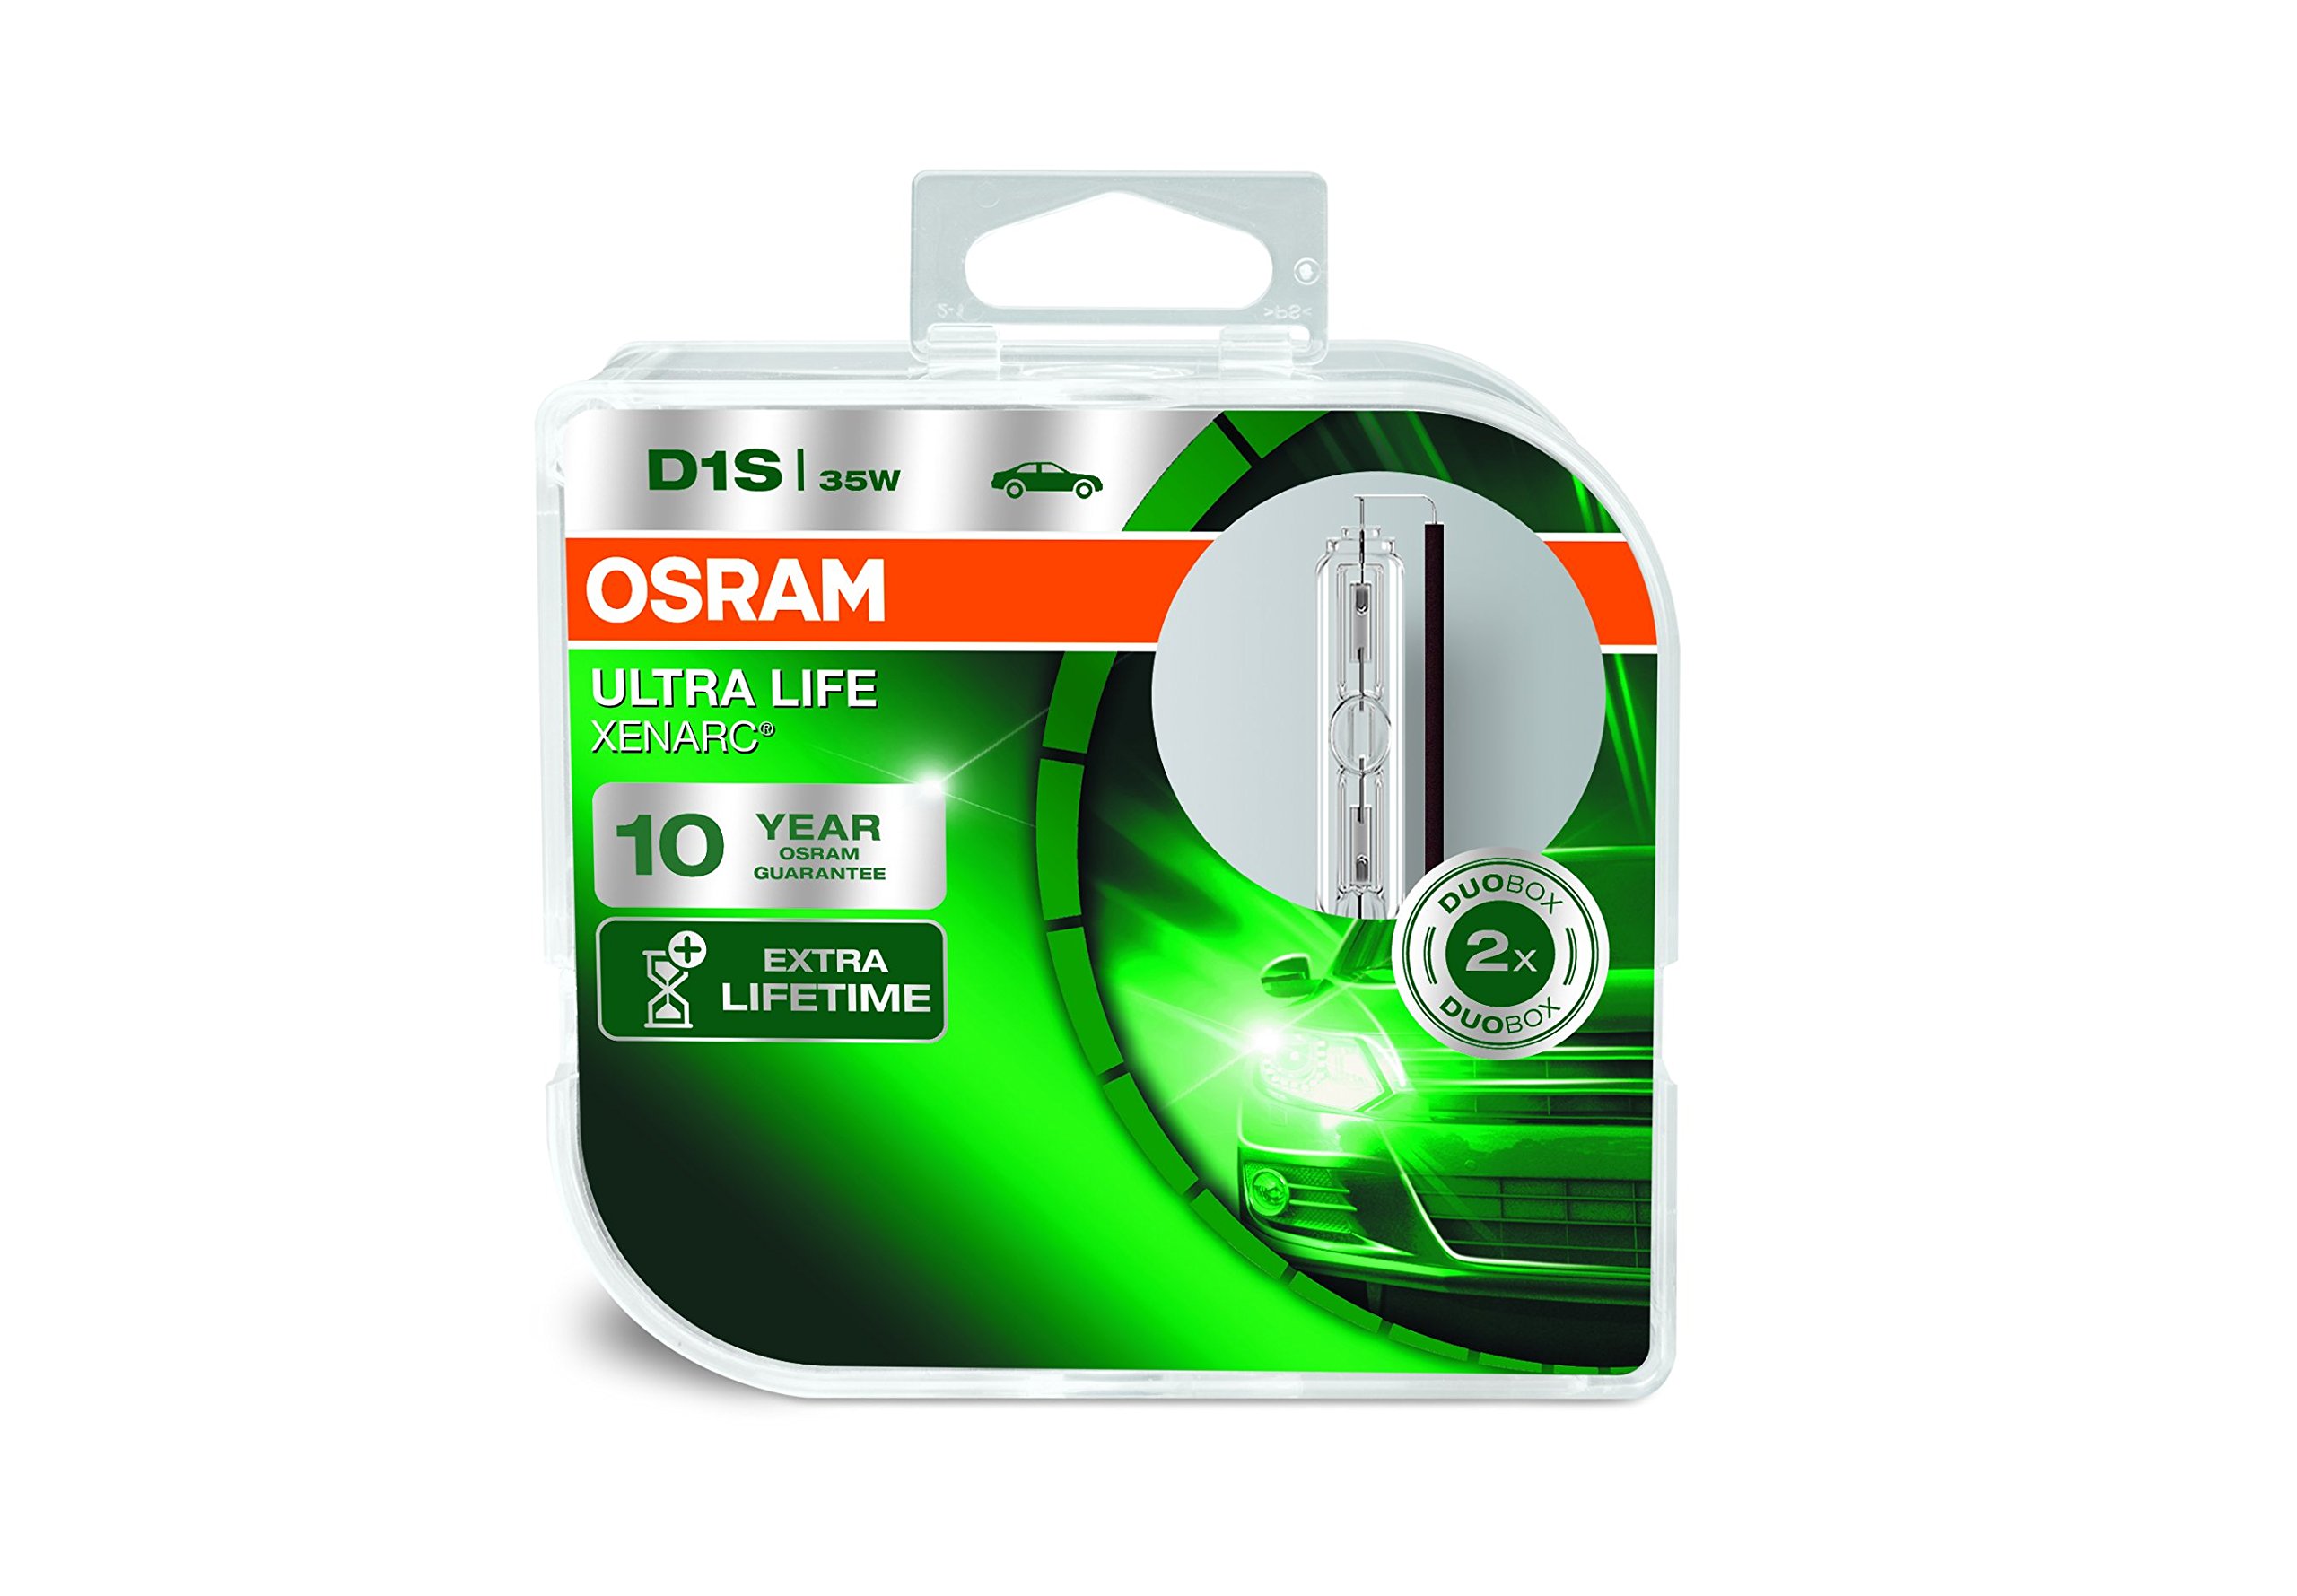 Osram Xenarc ULTRA LIFE D1S HID Xenon-Brenner, Entladungslampe, 66140ULT-HCB, Duobox (2 Stück)